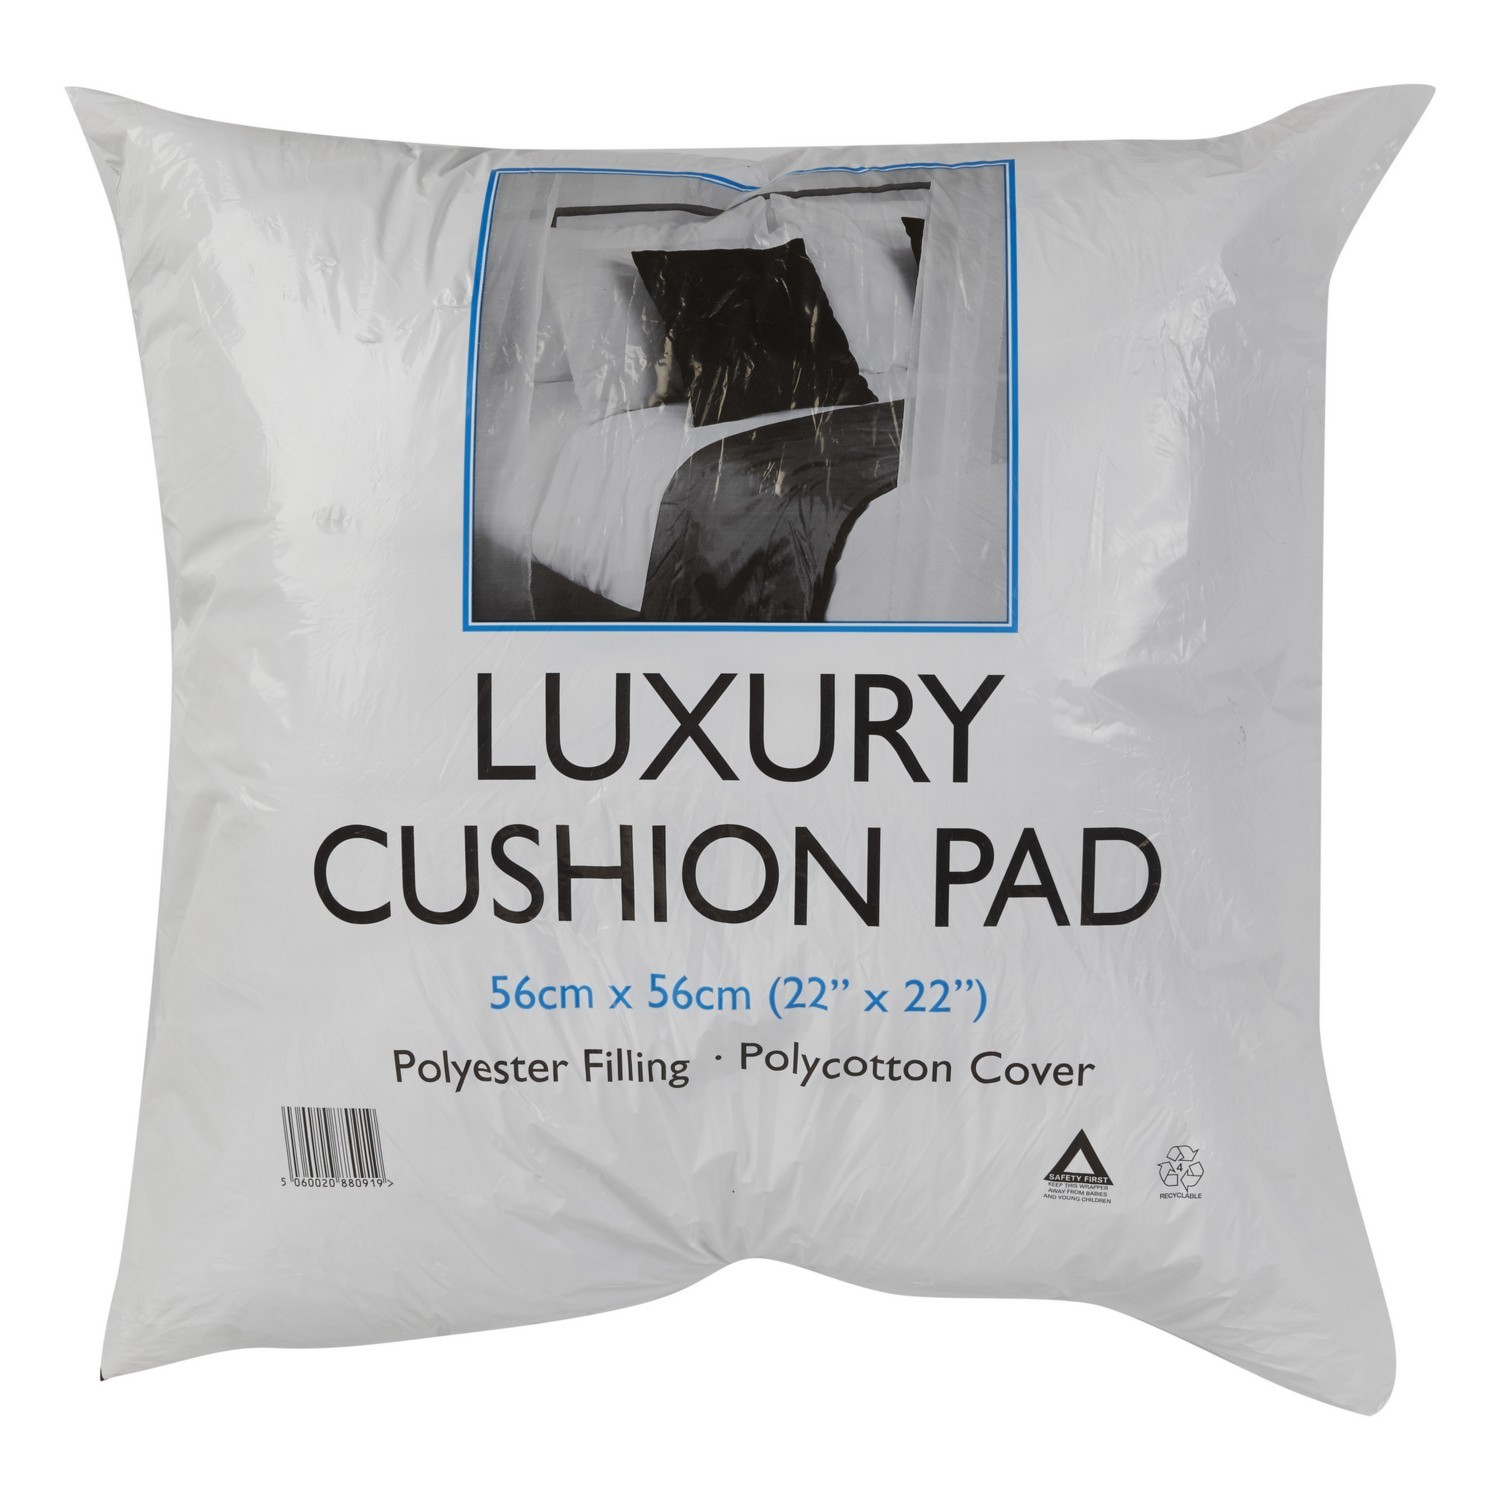 White Luxury Cushion Pad 56 x 56cm Image